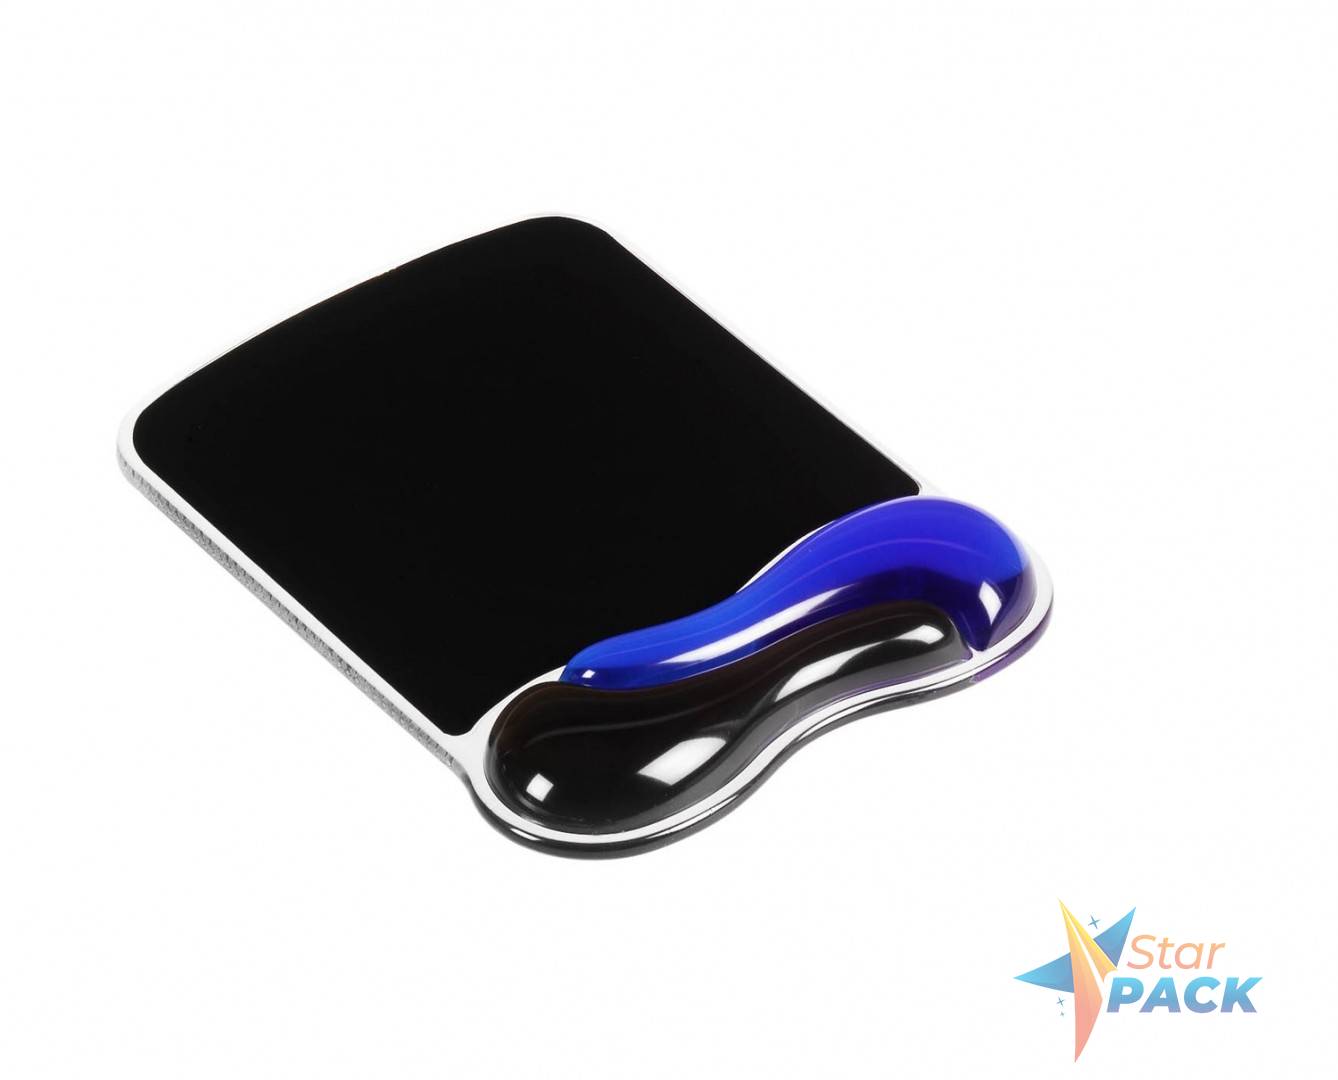 MOUSE pad KENSINGTON Duo Gel, suport ergonomic pentru incheietura mainii, cu gel, albastru/negru